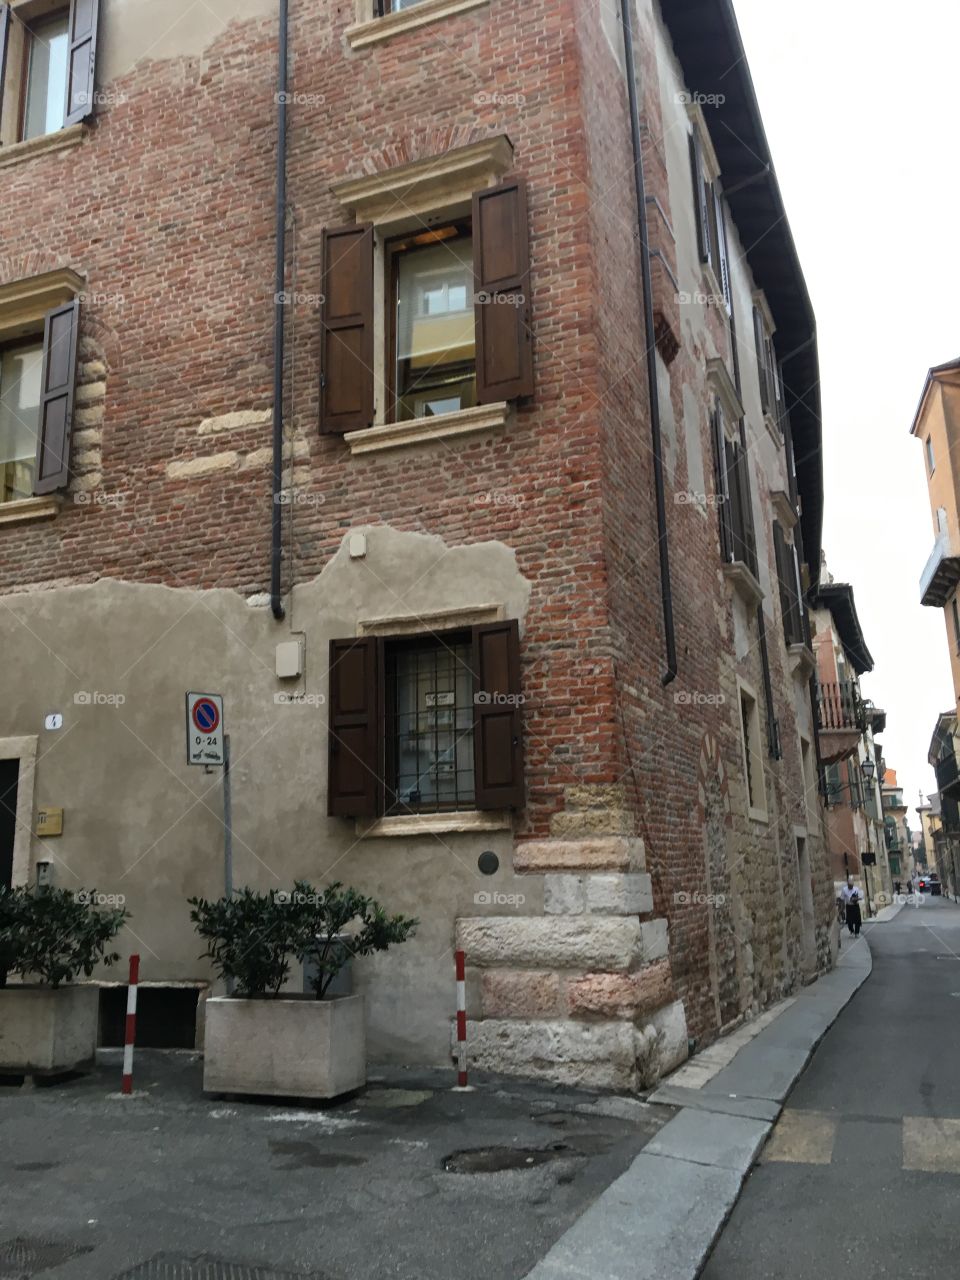 Verona building